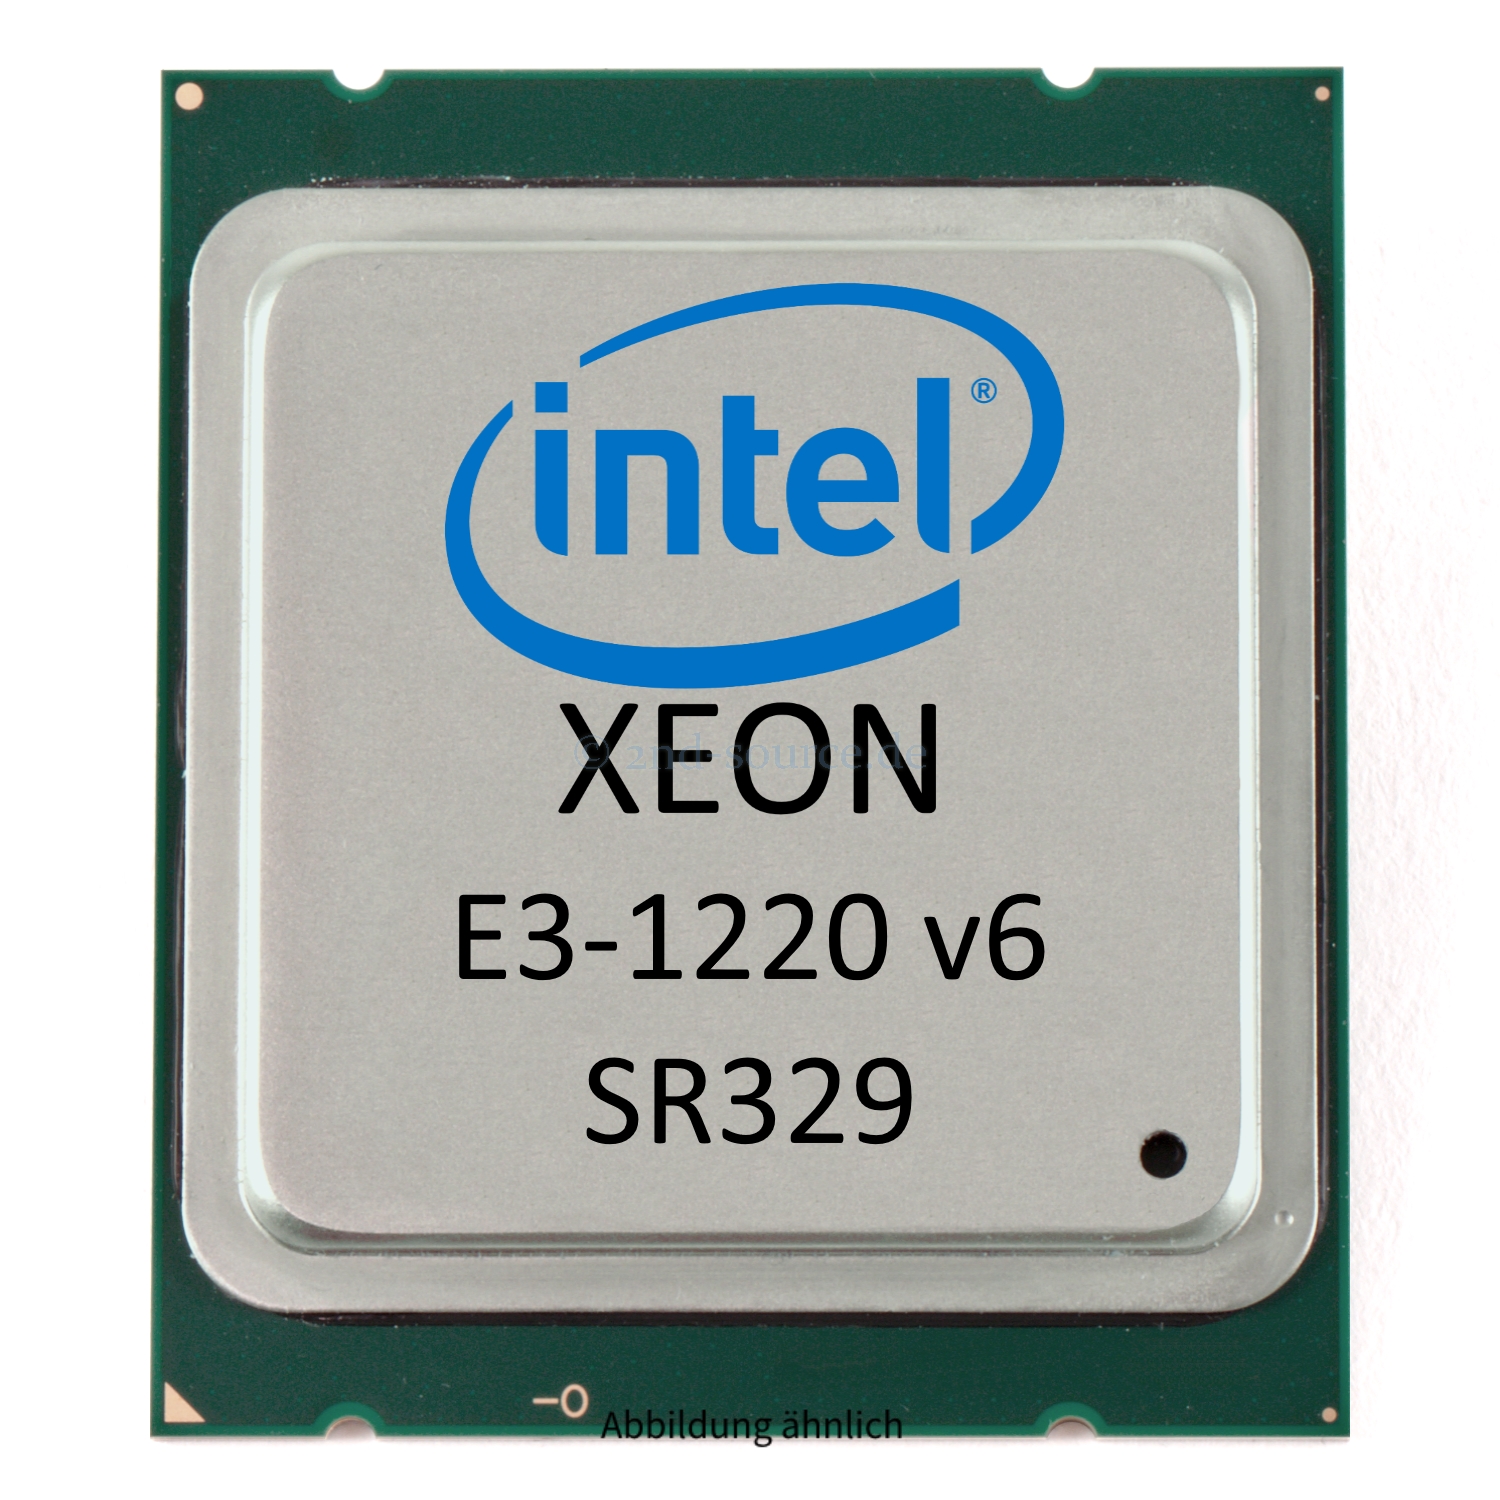 Intel Xeon E3-1220 v6 3.00GHz 8MB 4-Core CPU 72W SR329 CM8067702870812